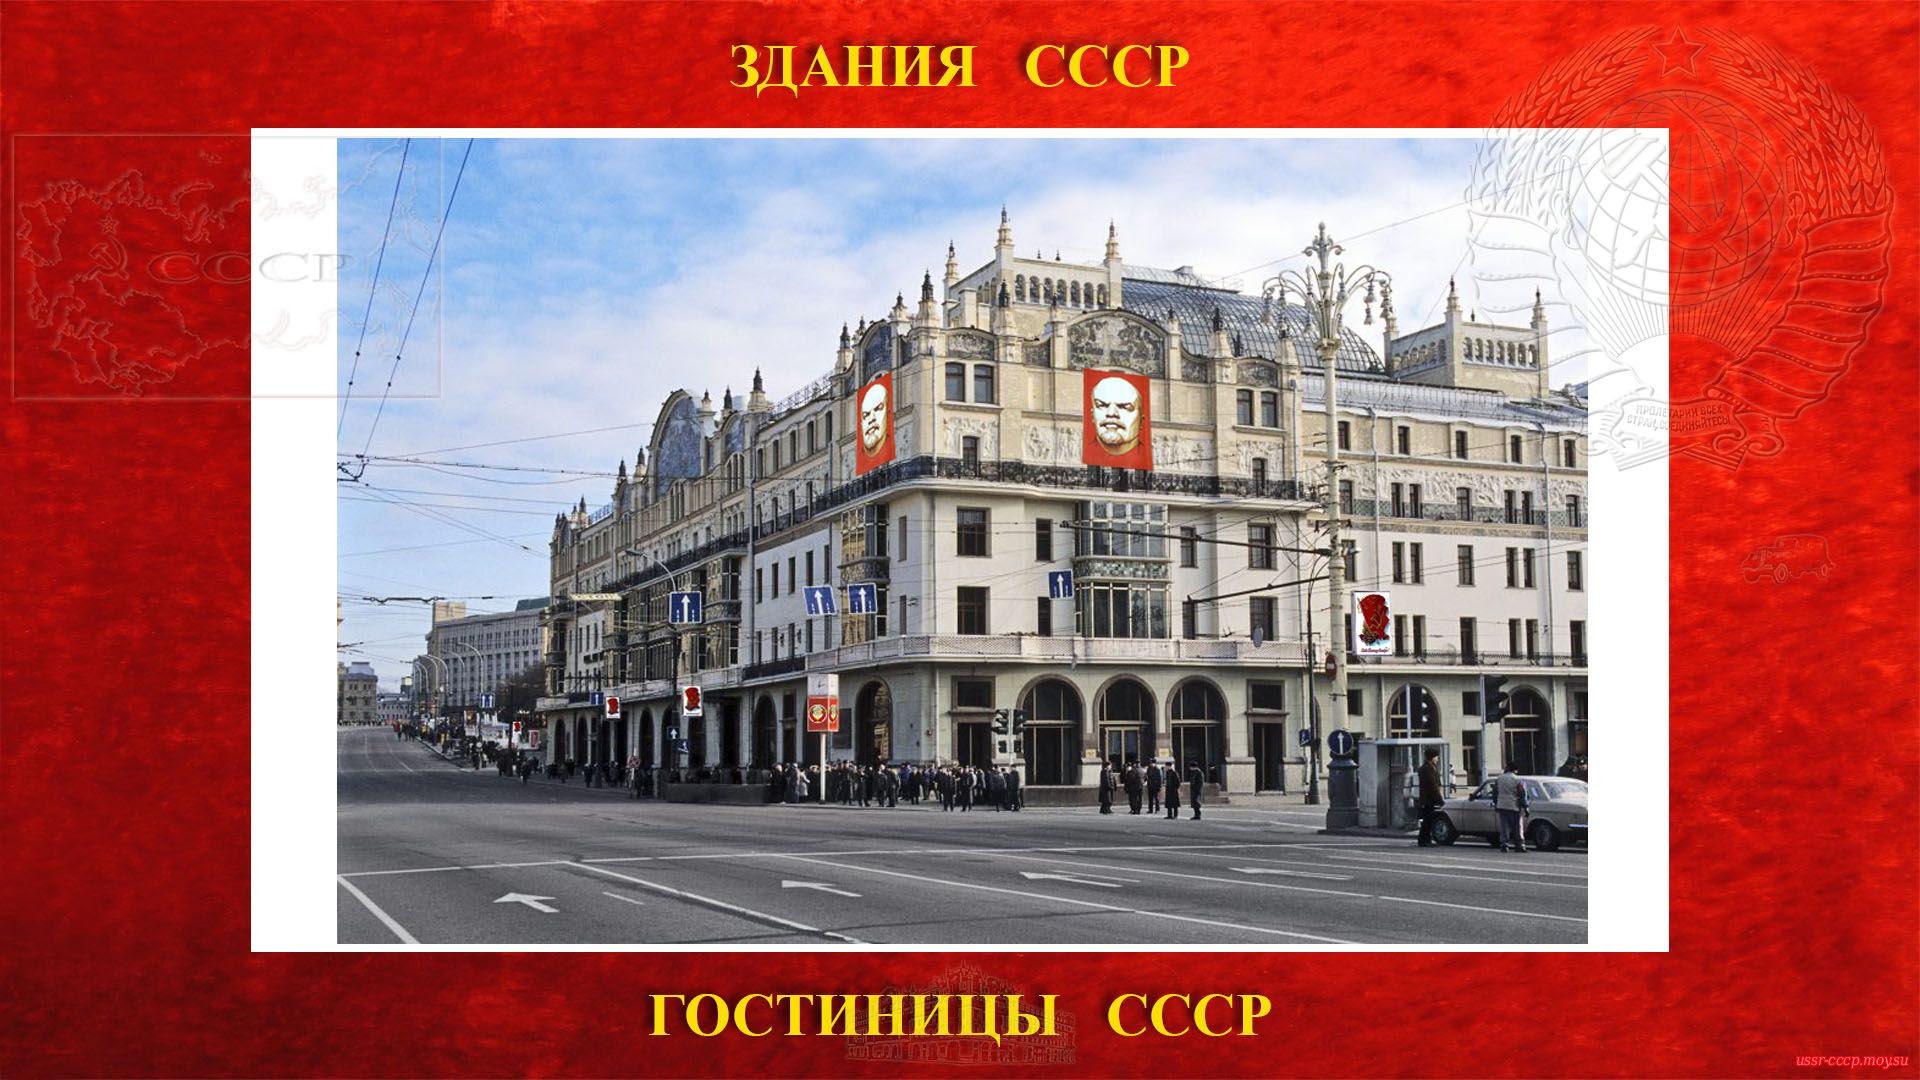 Метрополь — Гостиница в Москве (20.05.1905) (повествование)